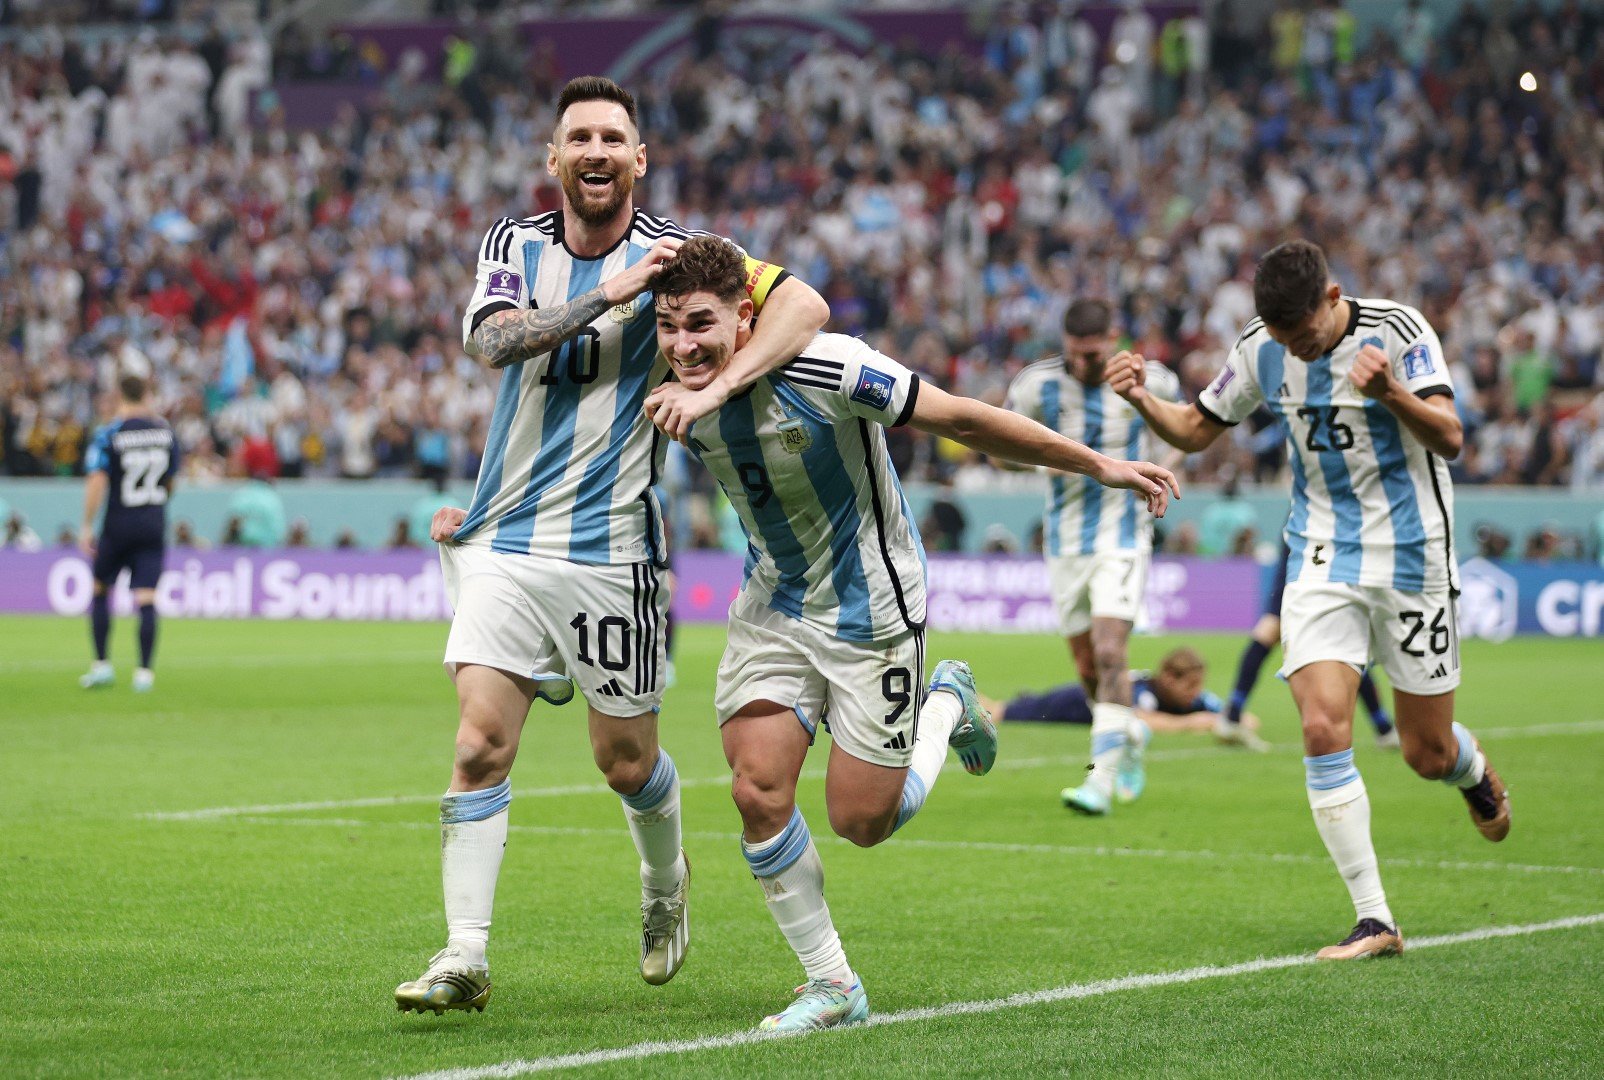 В първия полуфинал Аржентина и Хърватия играха равностоен футбол половин час, преди на сцената да излязат Хулиан Алварес и Лионел Меси. Победата с 3:0 класира гаучосите на големия финал.